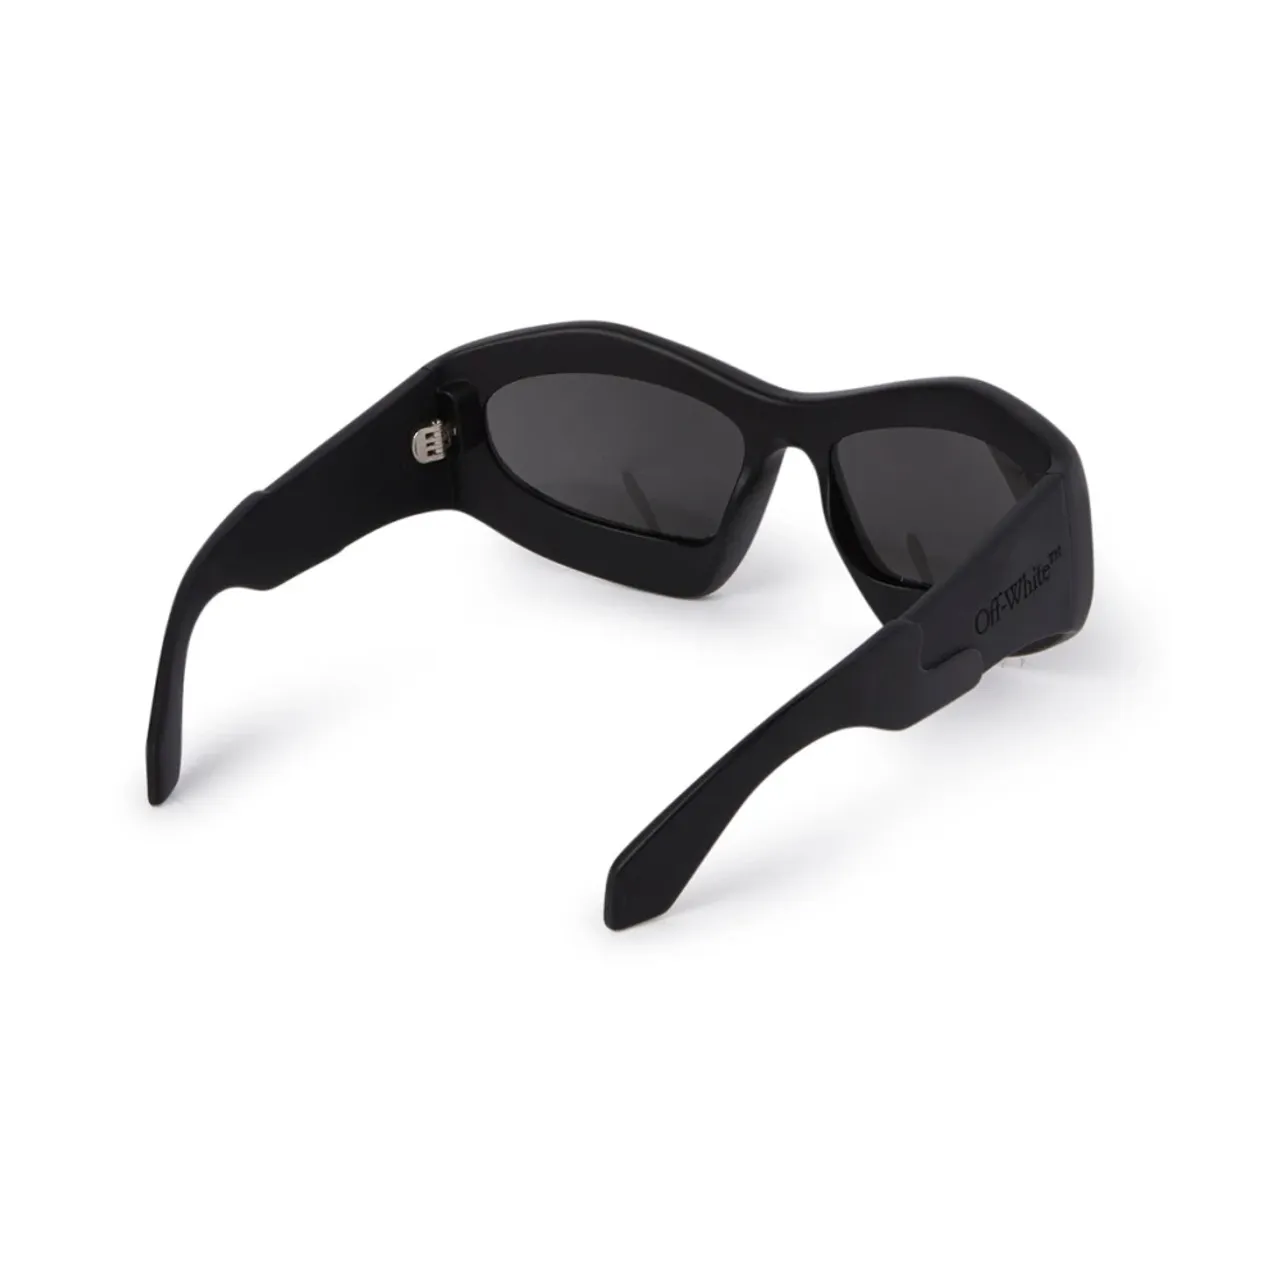 Katoka Sunglasses Off White